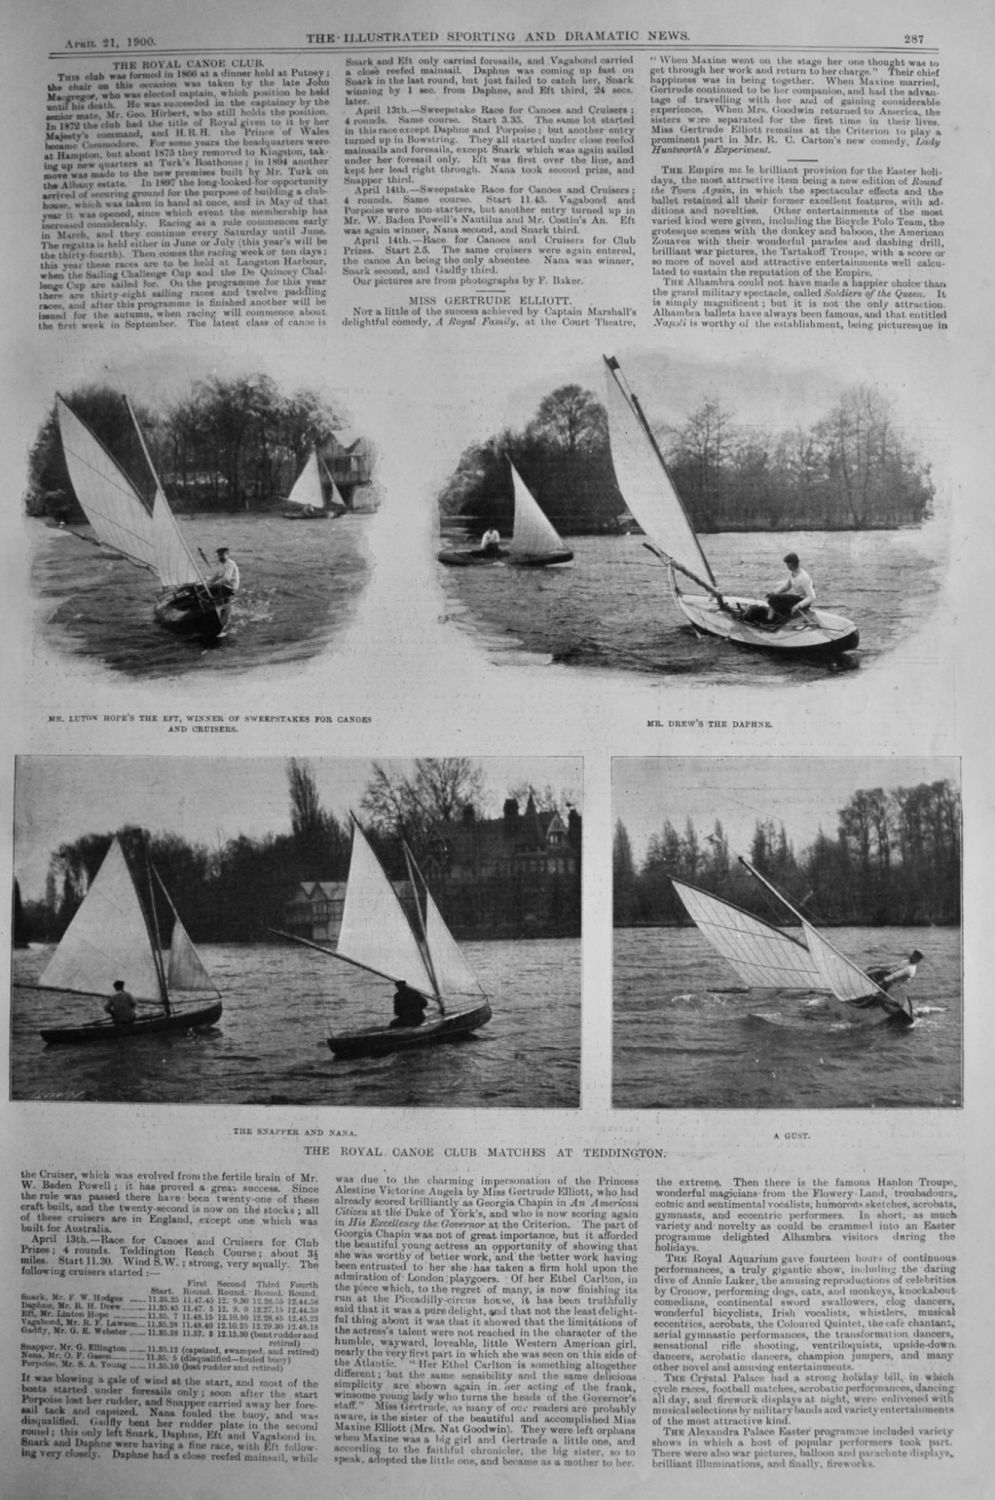 The Royal Canoe Club's Matches at Teddington.  1900.